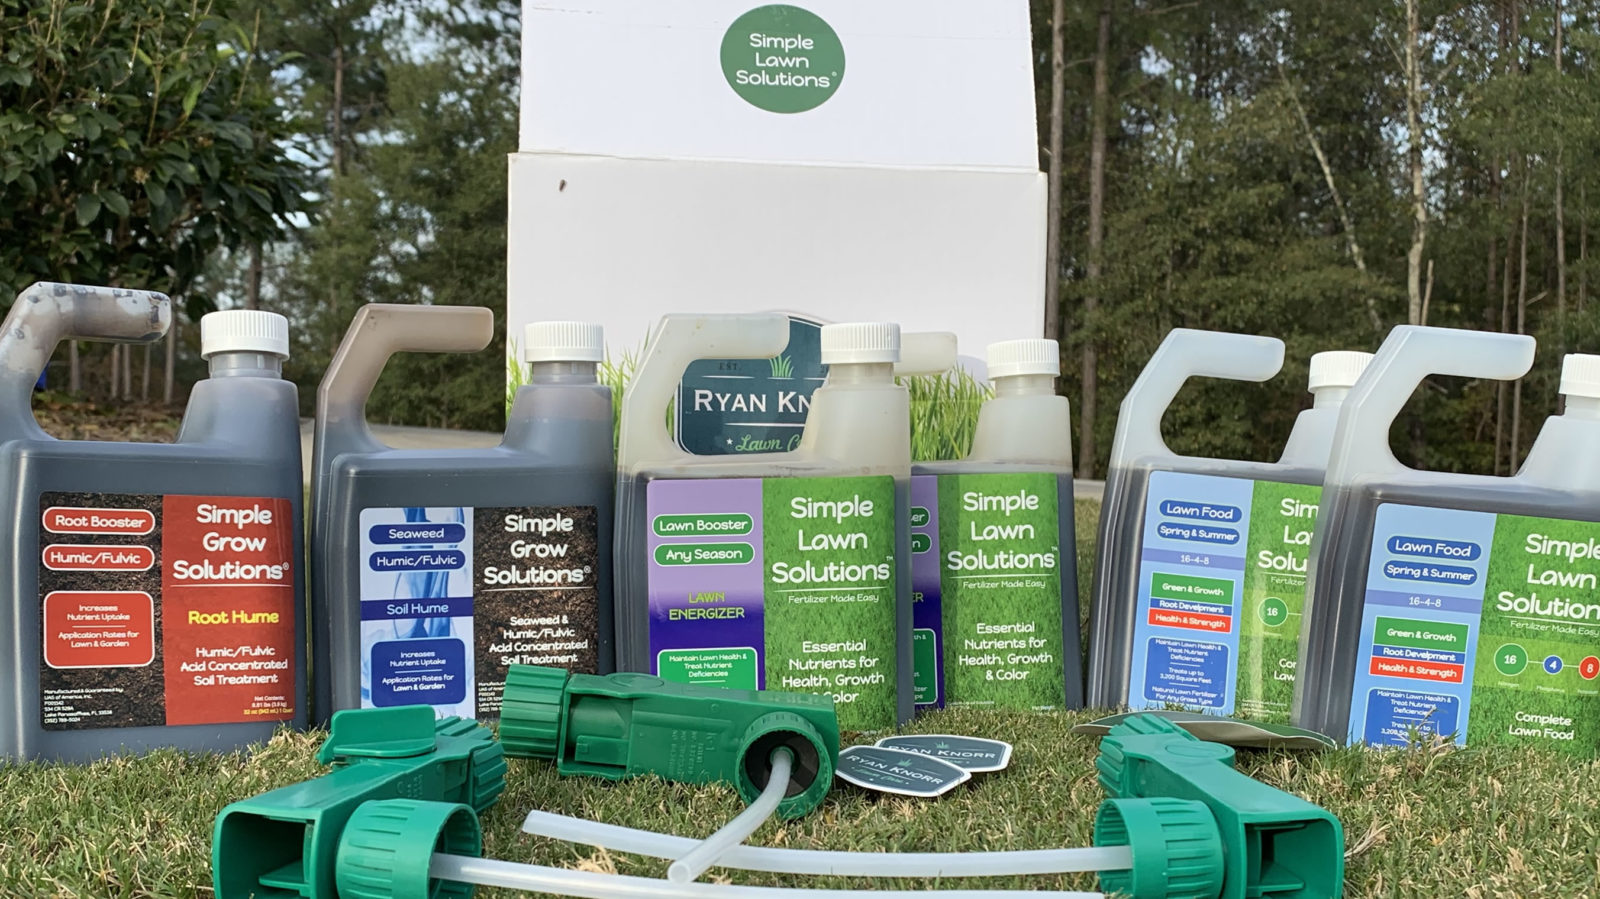 Simple Lawn Solutions | Ryan Knorr